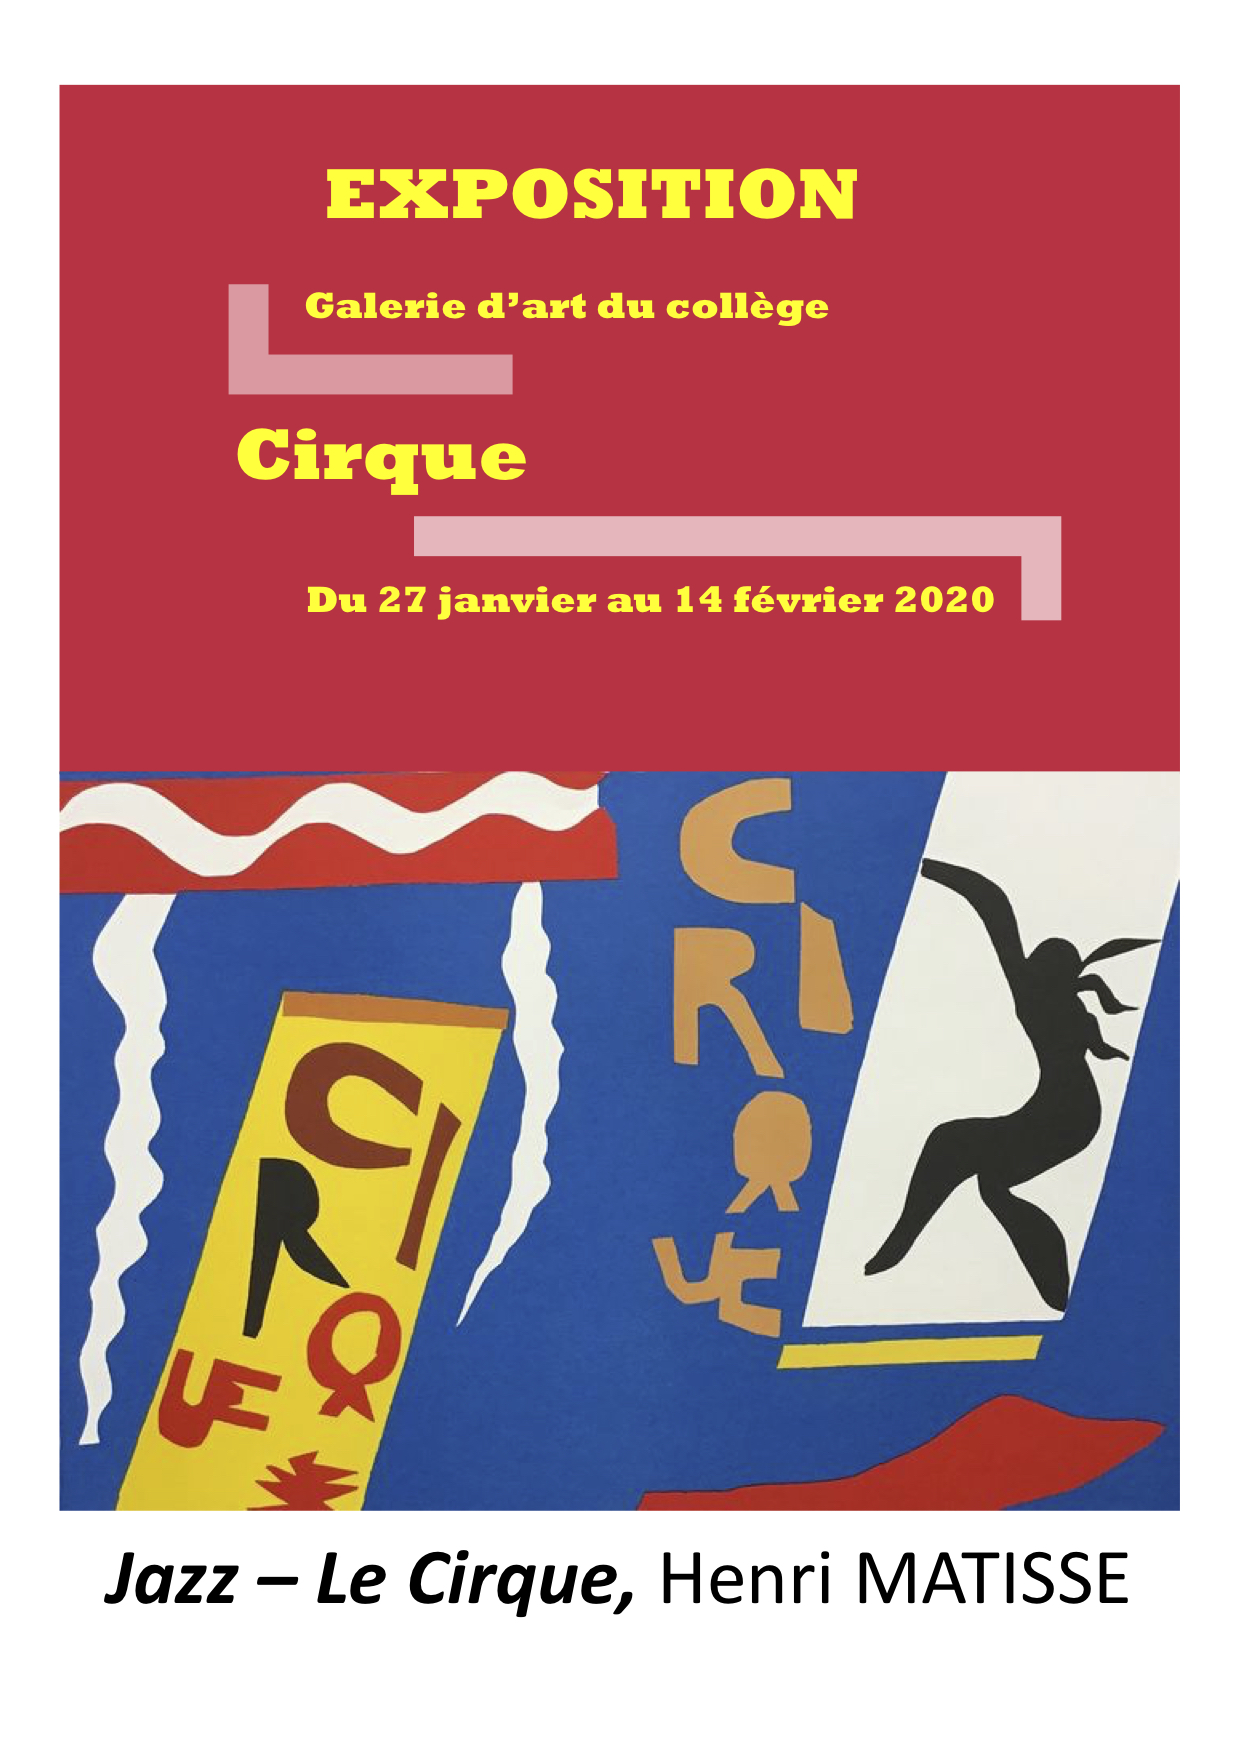 Cirque_Affiche.jpg, janv. 2020